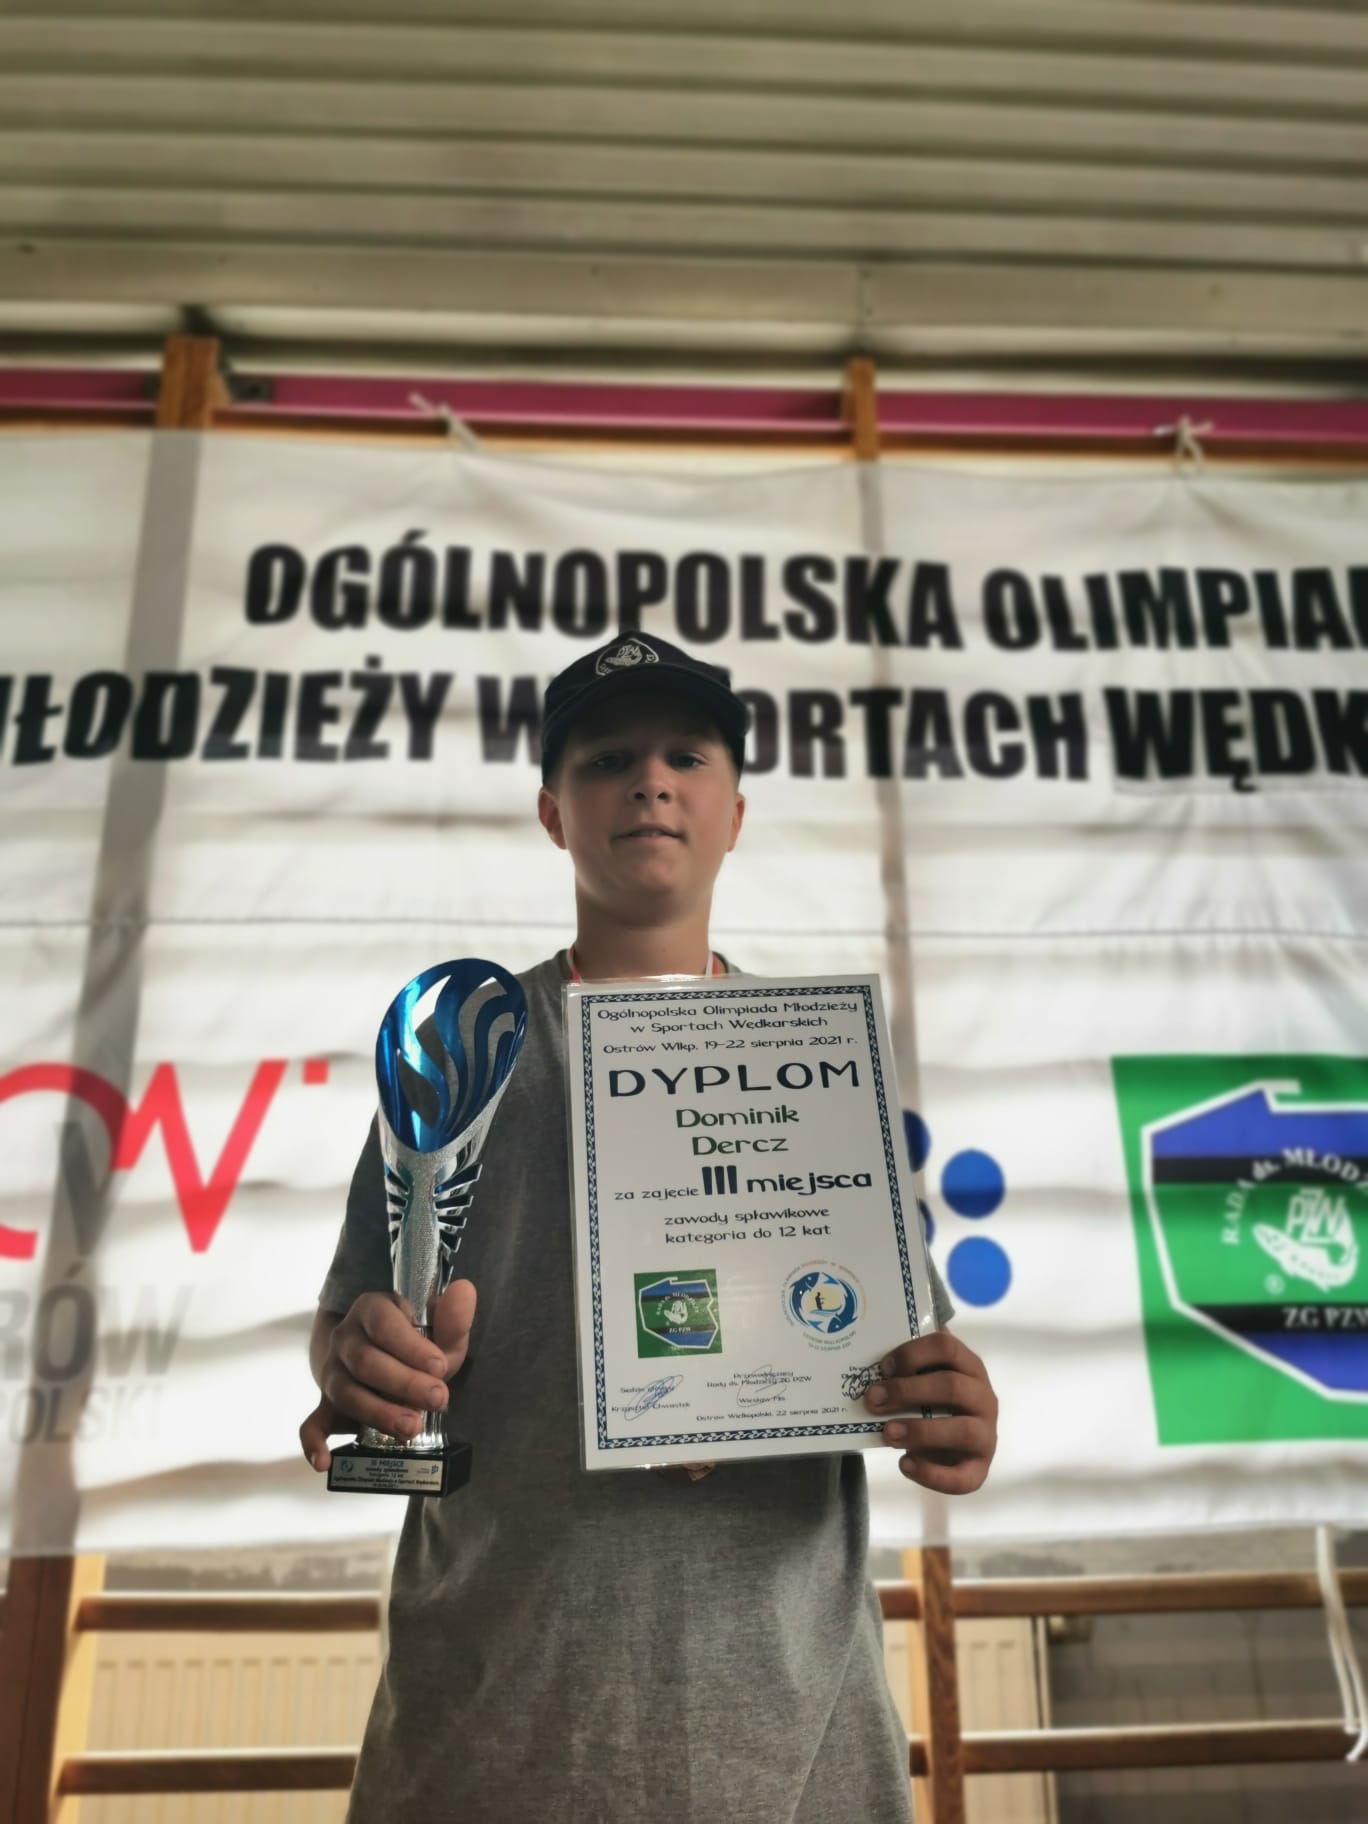 Dominik z Pucharem i Dyplomem za zajęcie III miejsca w Ogólnopolskiej Olimpiadzie Młodzieży w Sportach Wędkarskich